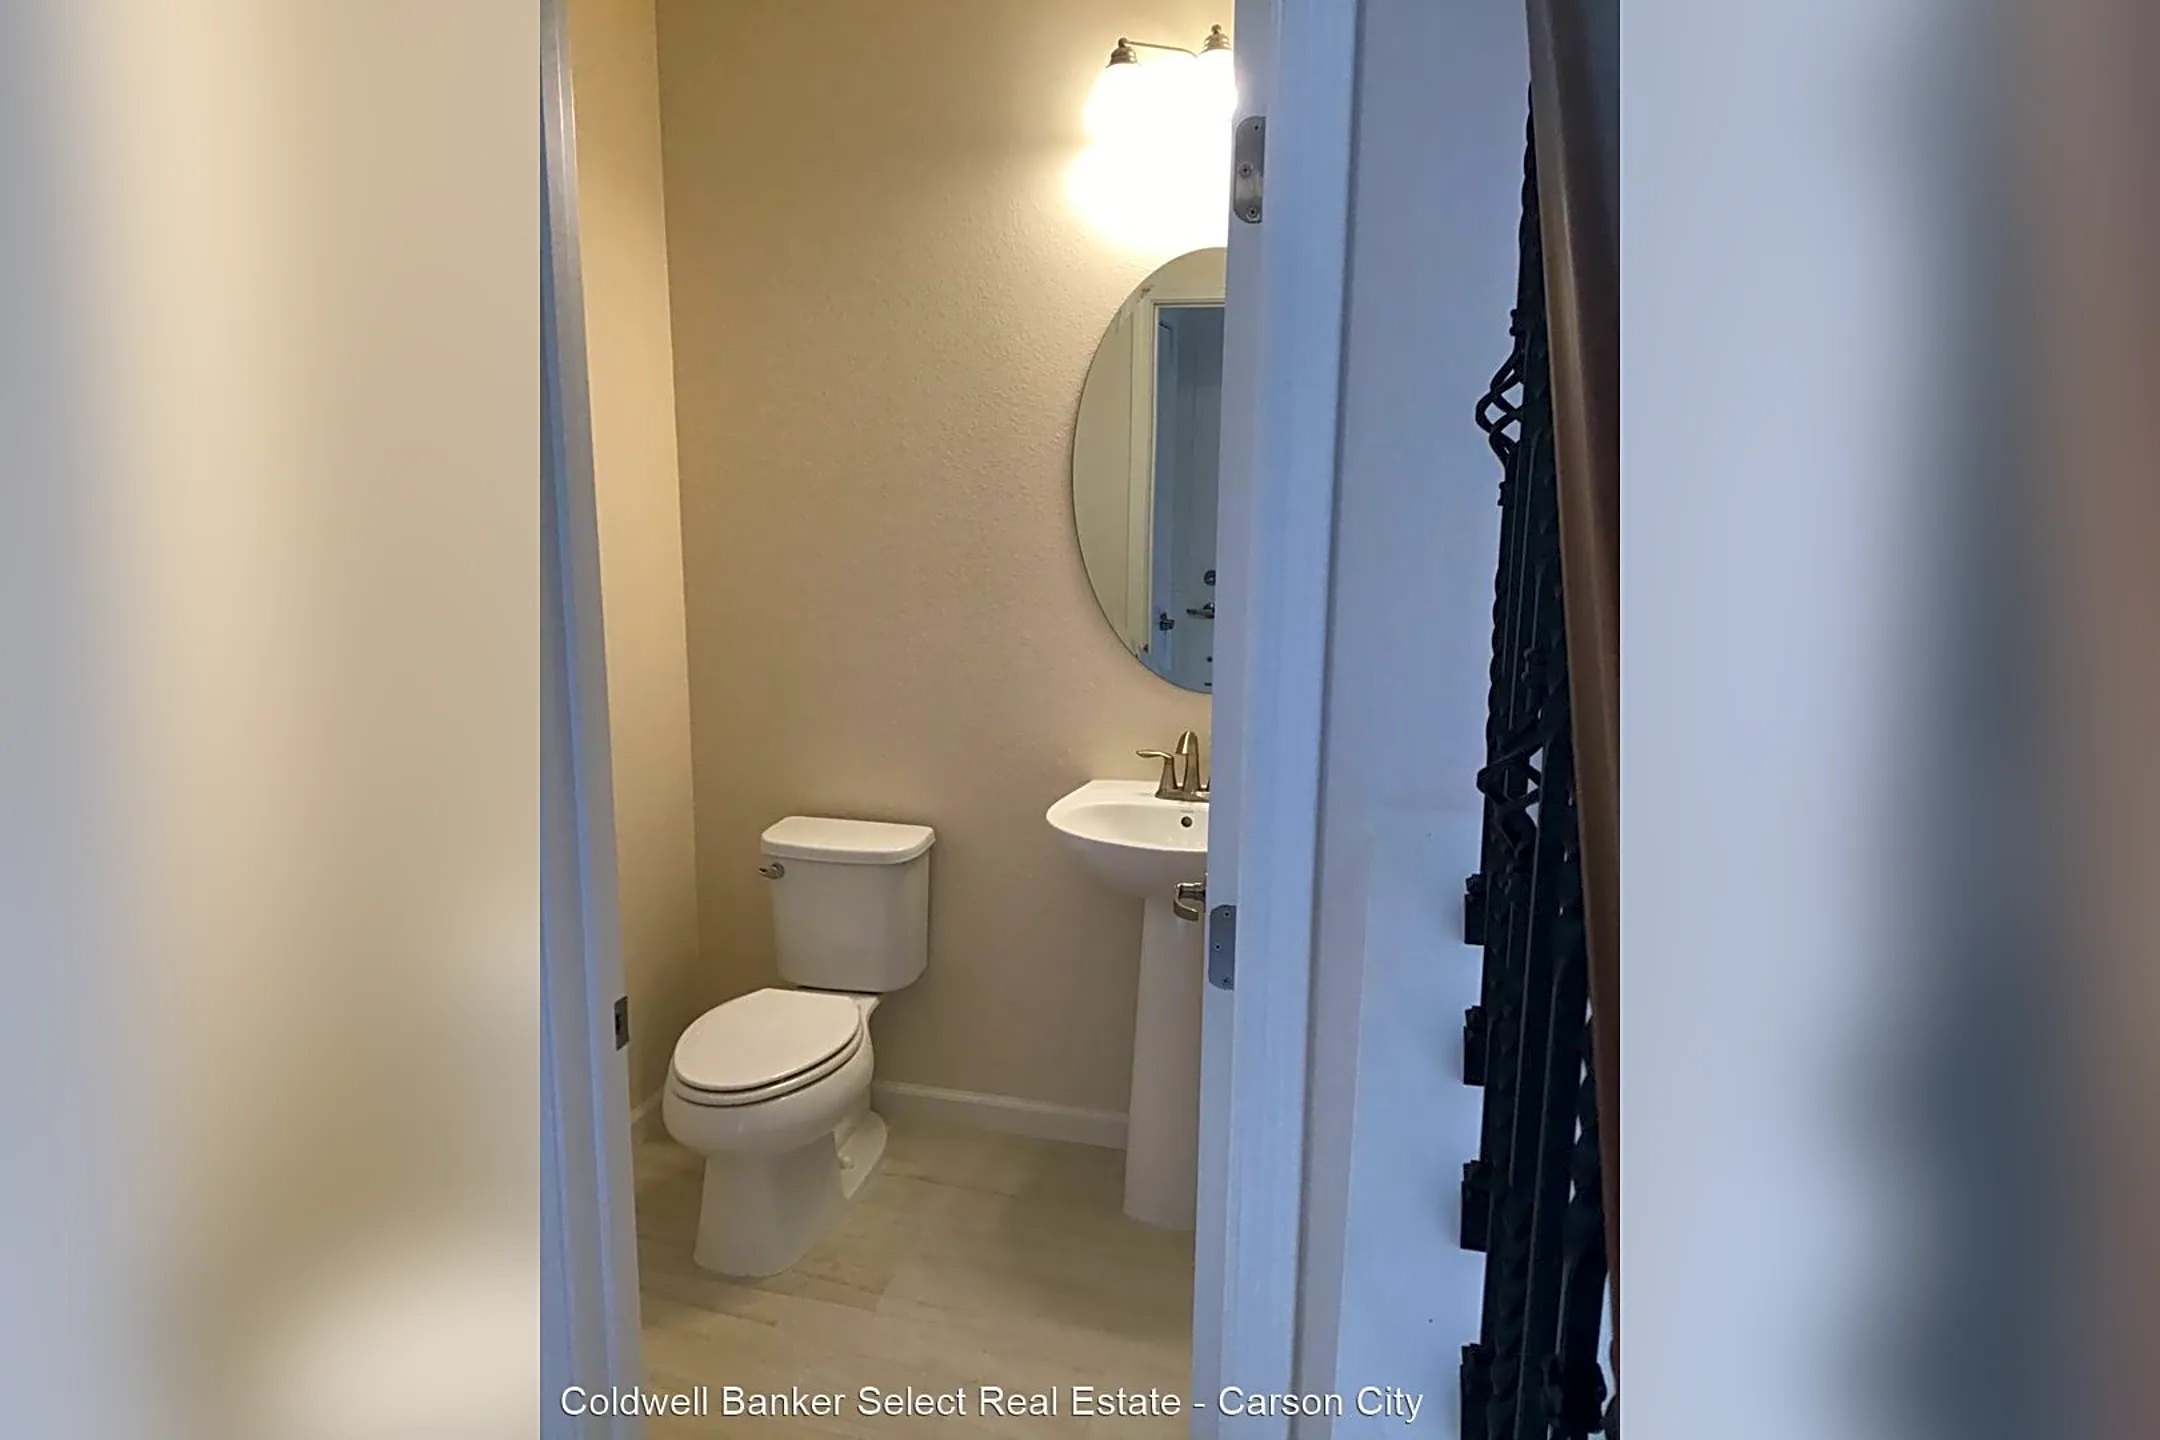 Bathroom - 1003 Arbor Rd - Carson City, NV